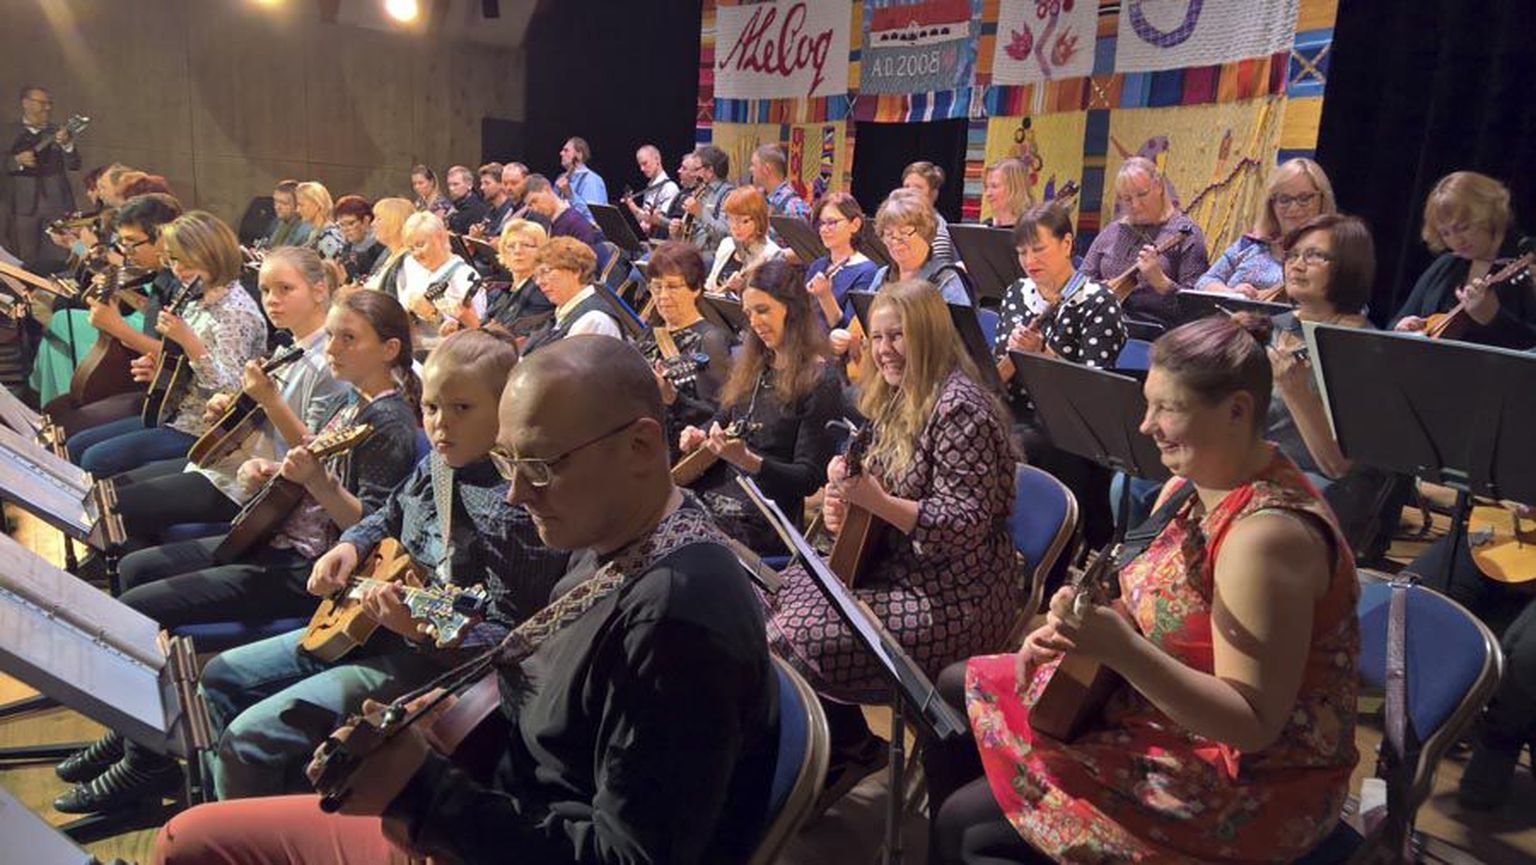 Uhtna ja Tapa mandoliiniorkestri koosseisus musitseeris pärimusmuusika aida laval poolsada pillimänguharrastajat.